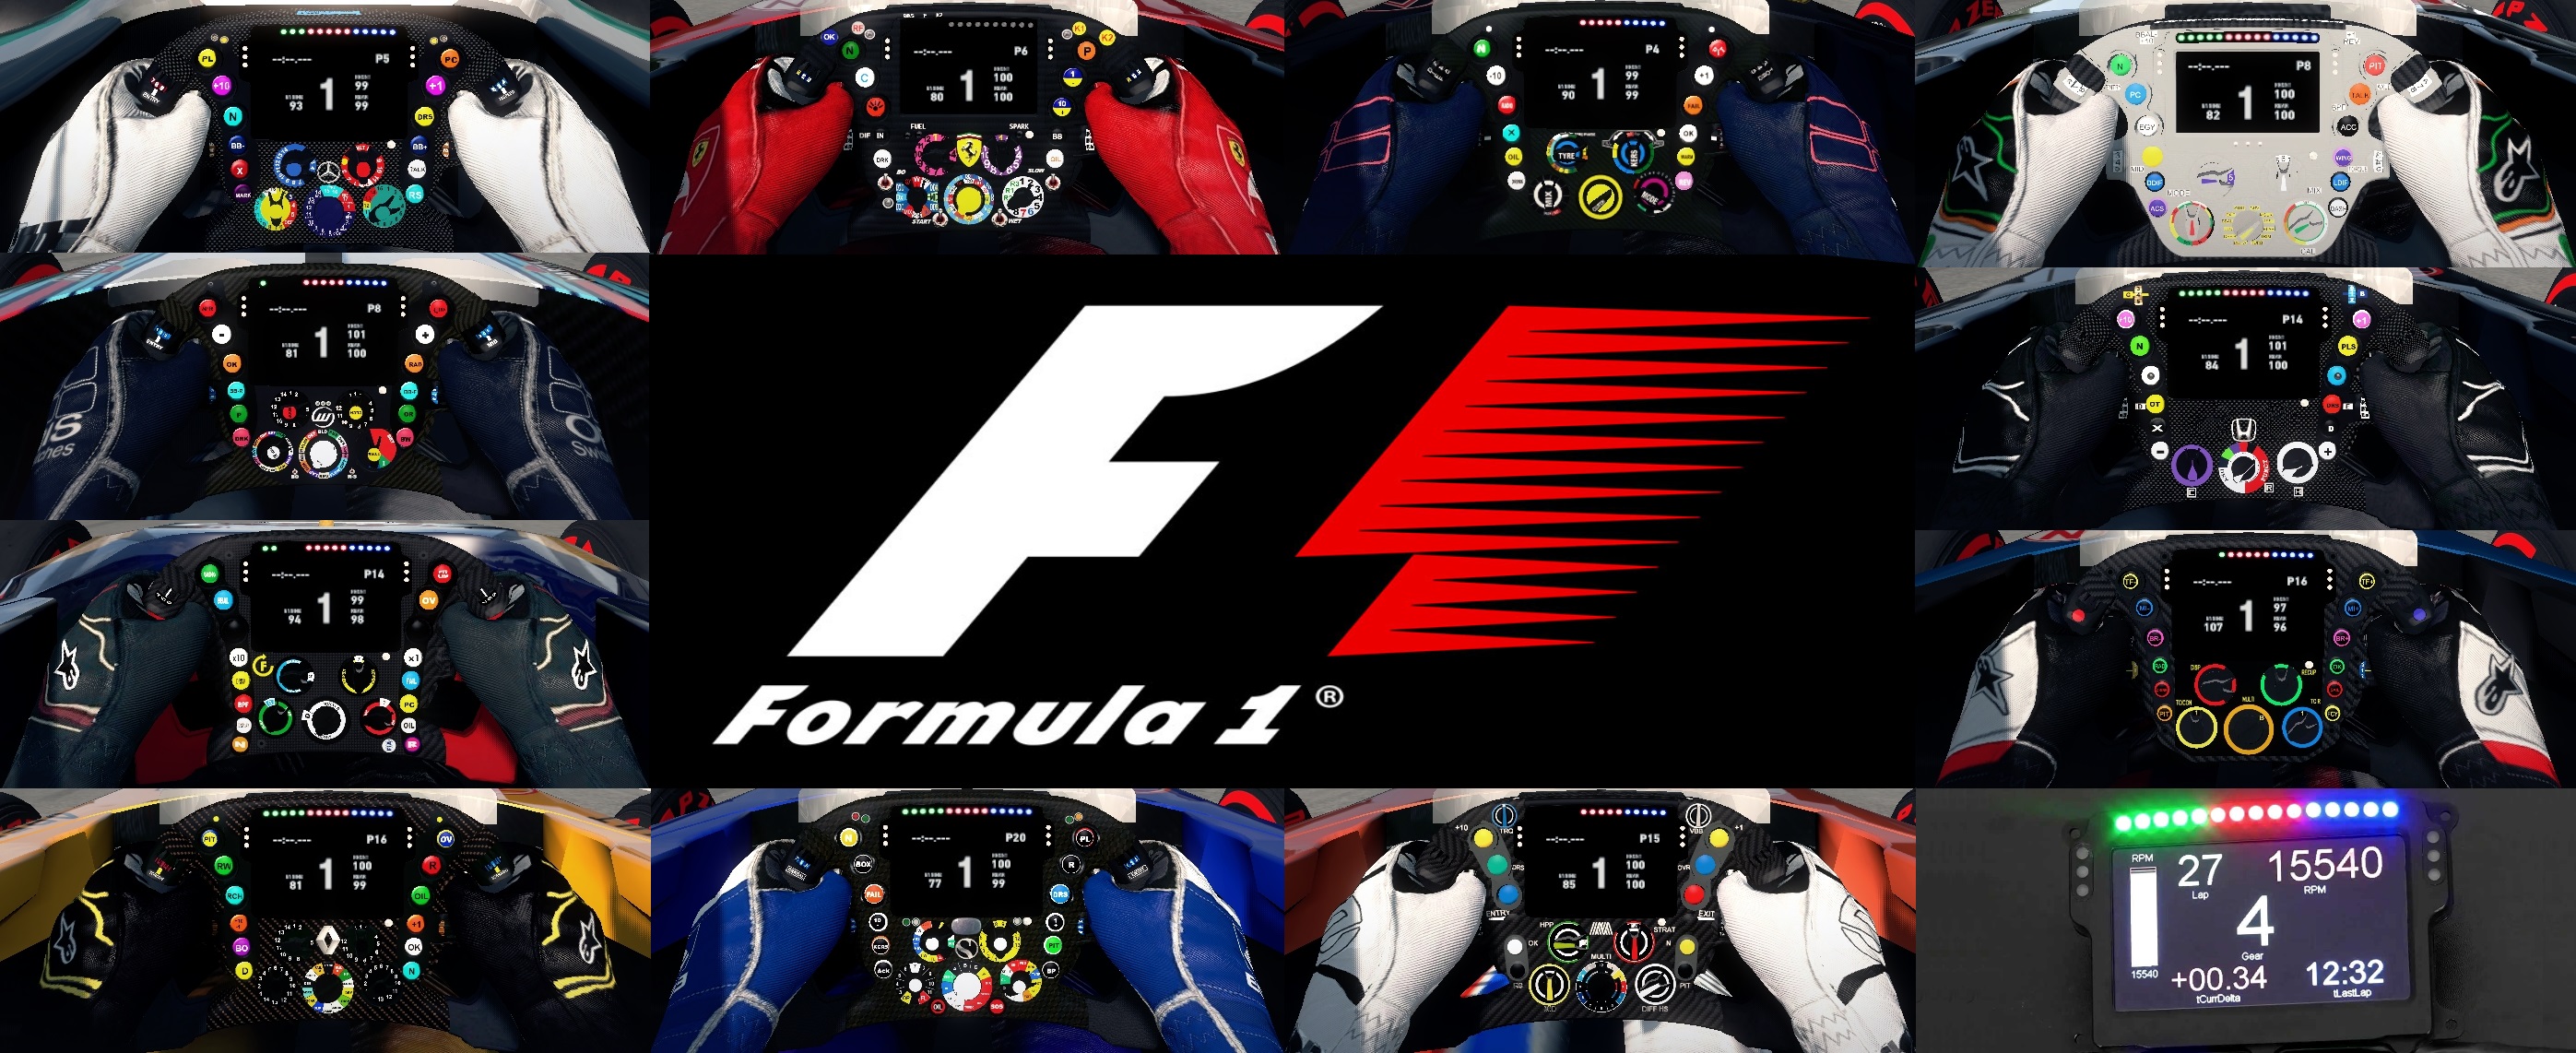 F1 Steering wheels.jpg